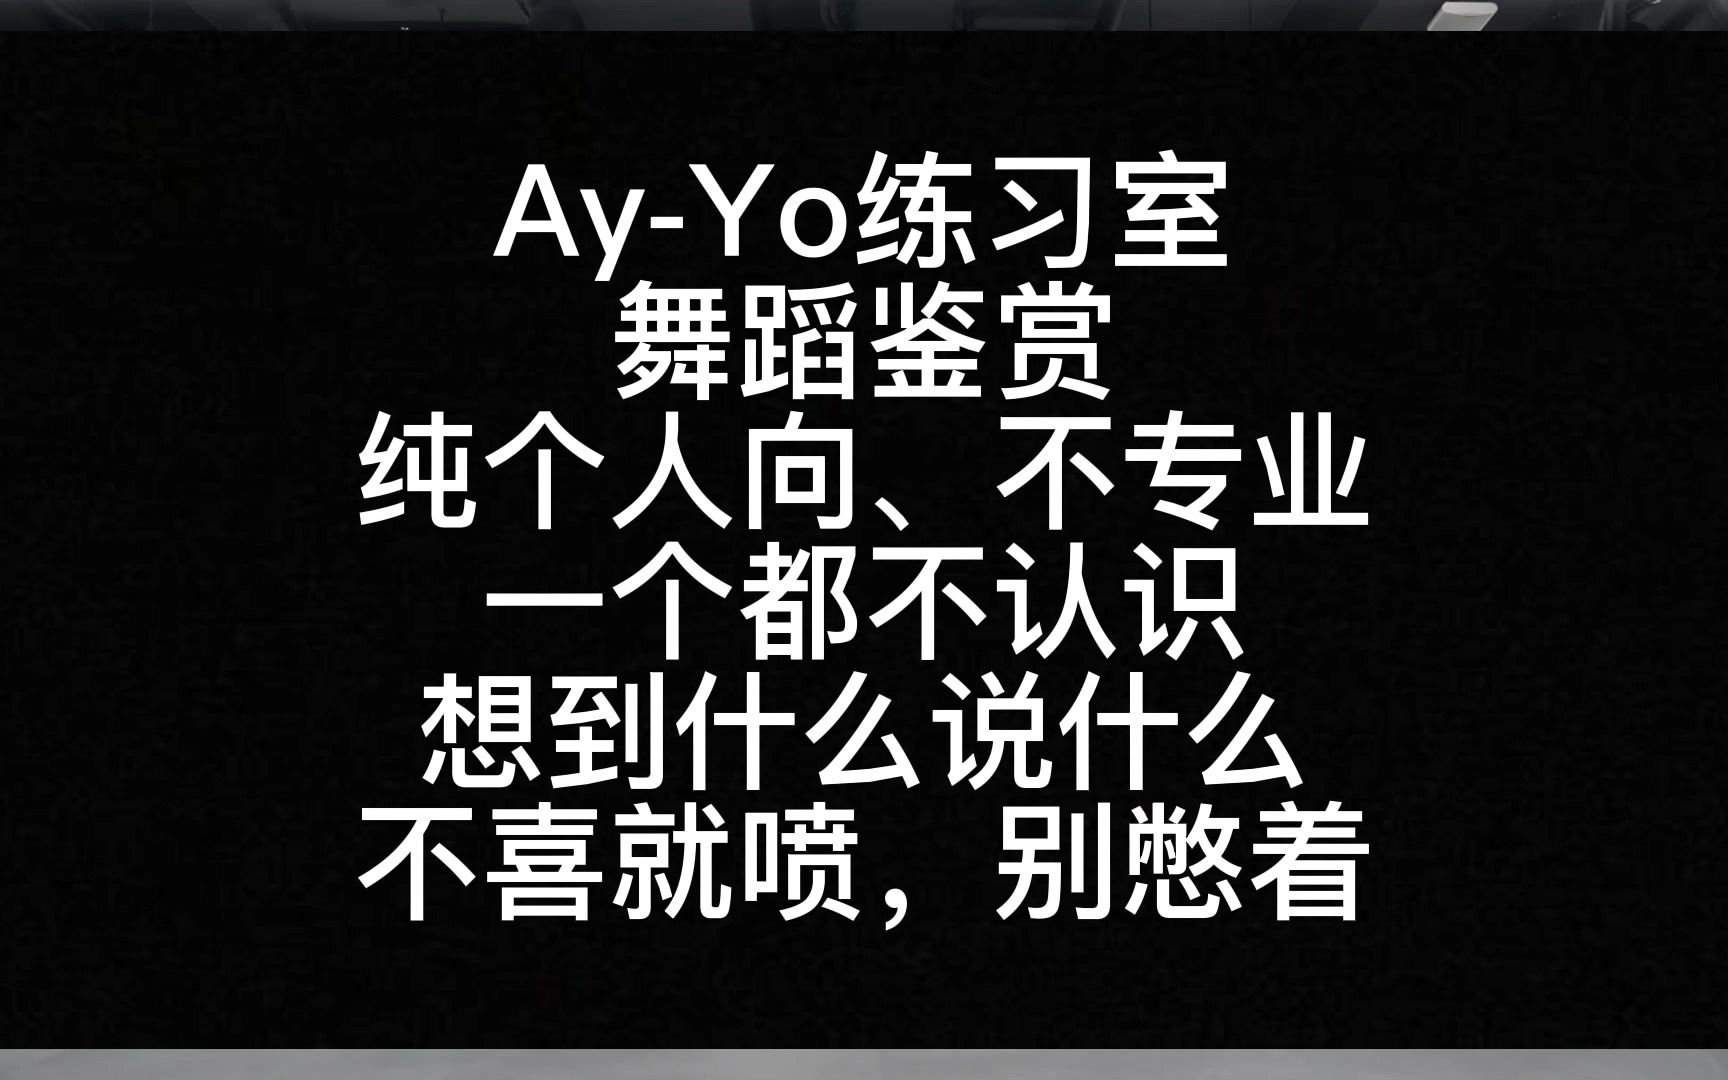 【Reaction】NCT 127 作品‘Ay-Yo’练习室